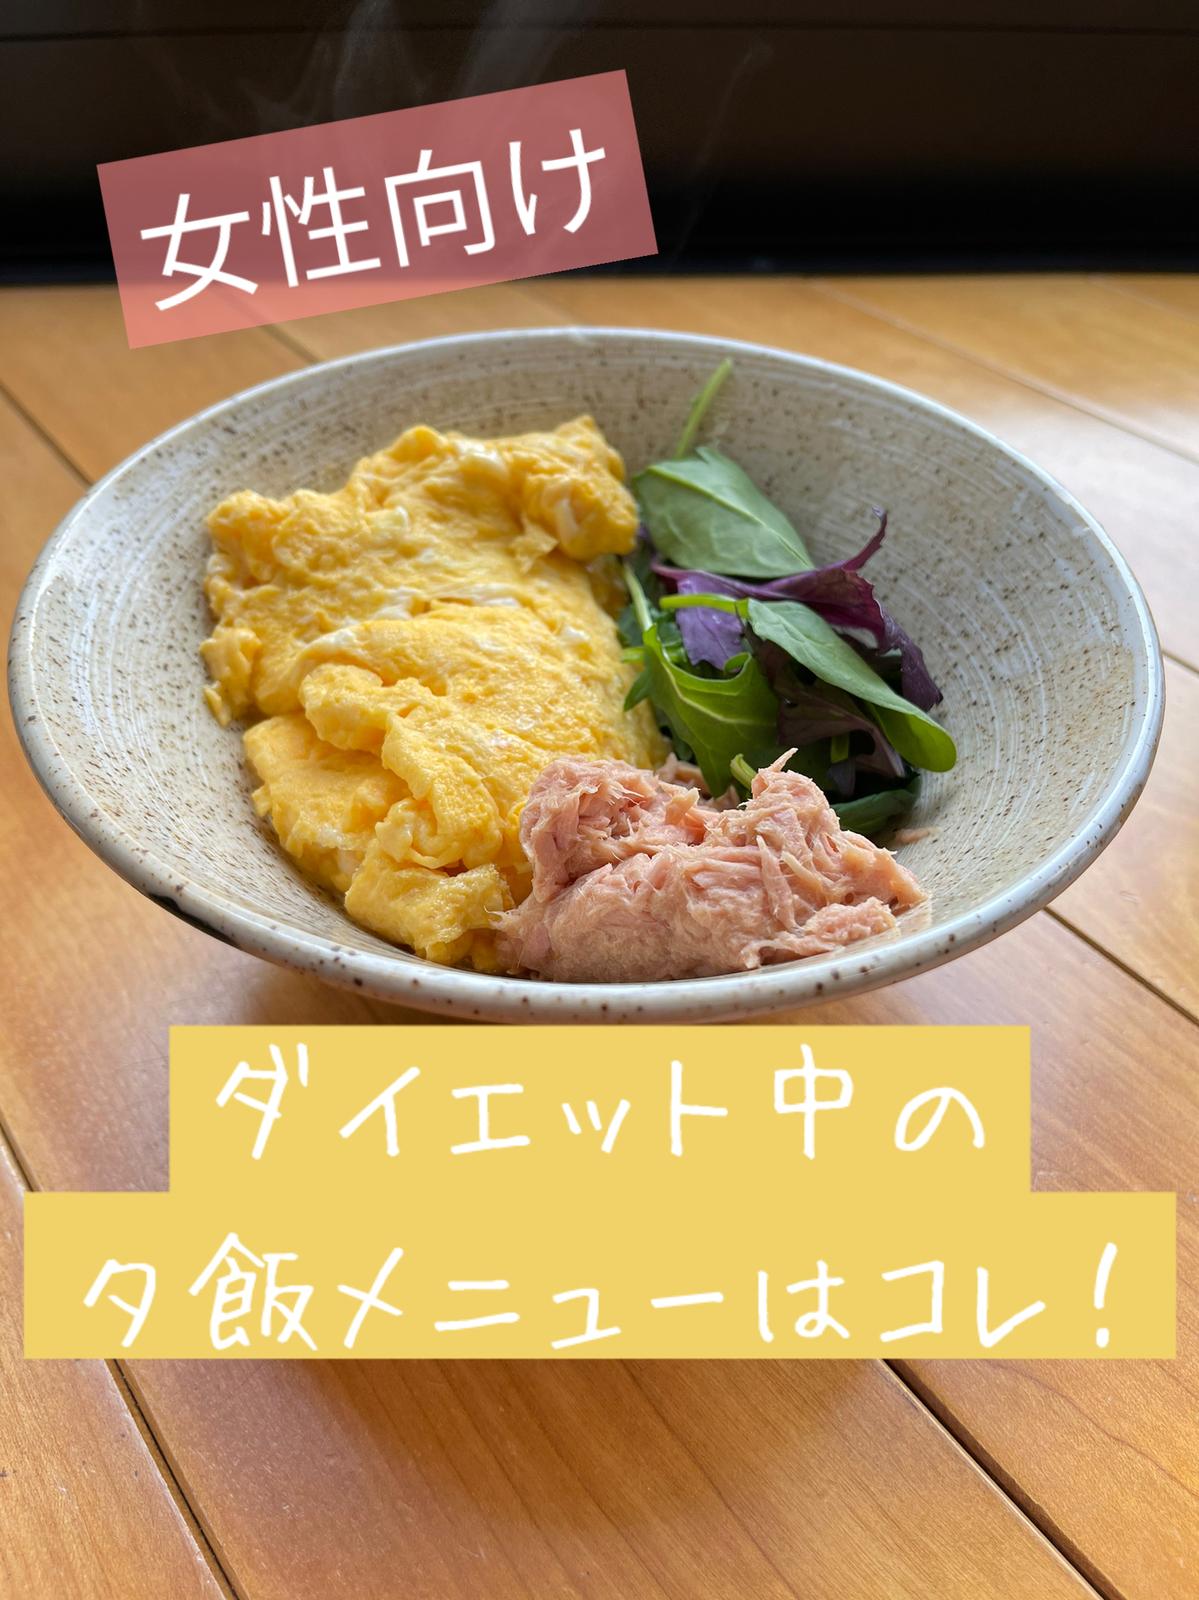 女性向け ダイエット中の夕飯に食べる最強メニュー 田中圭介 ジムトレーナーが投稿したフォトブック Lemon8